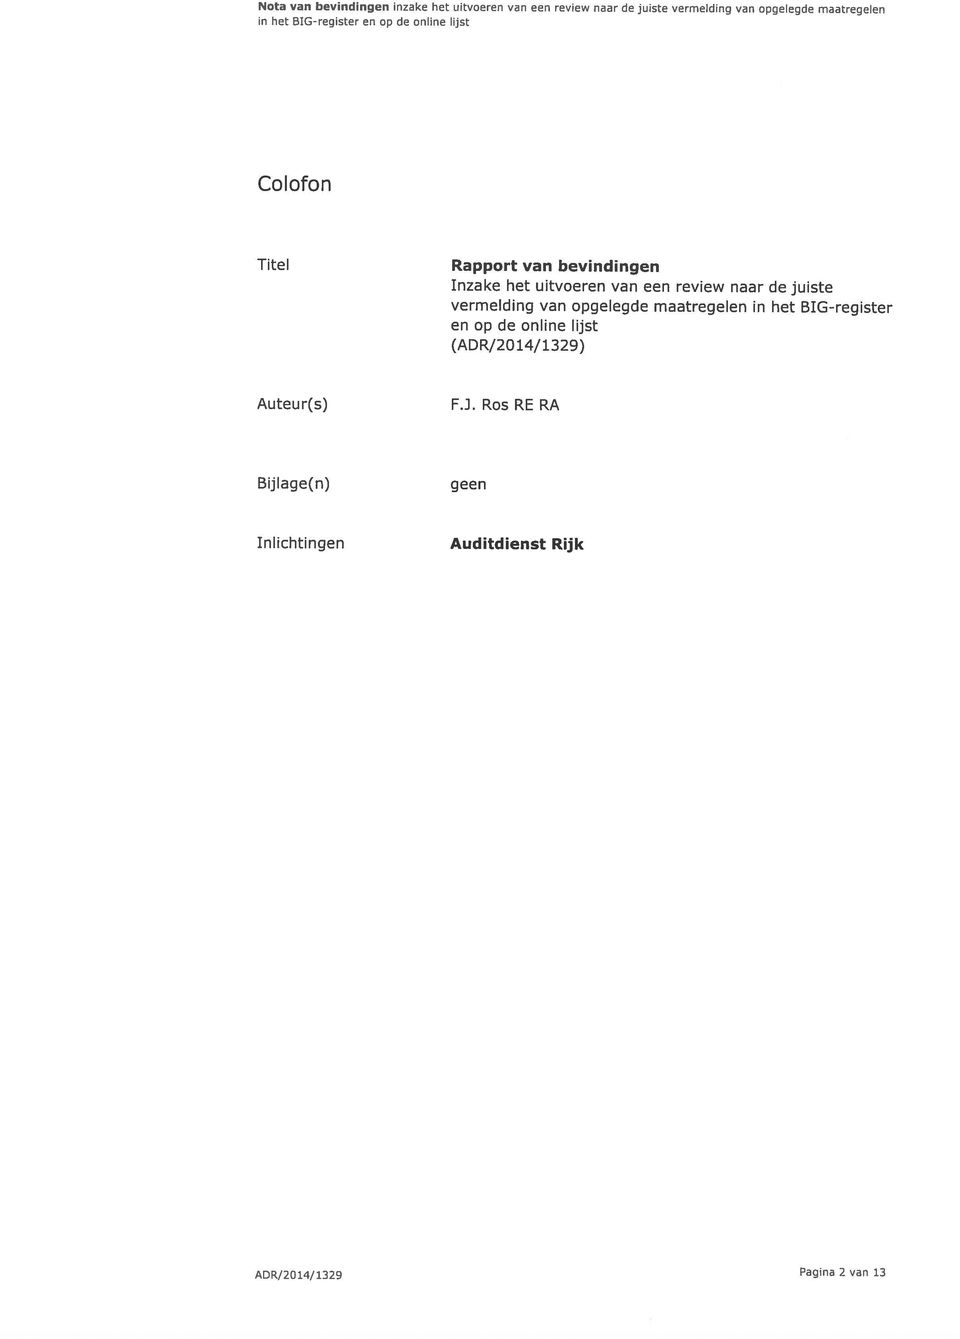 ADR/2014/1329 Inlichtingen Auditdienst Rijk Bijlage(n) geen Auteur(s) F.J.